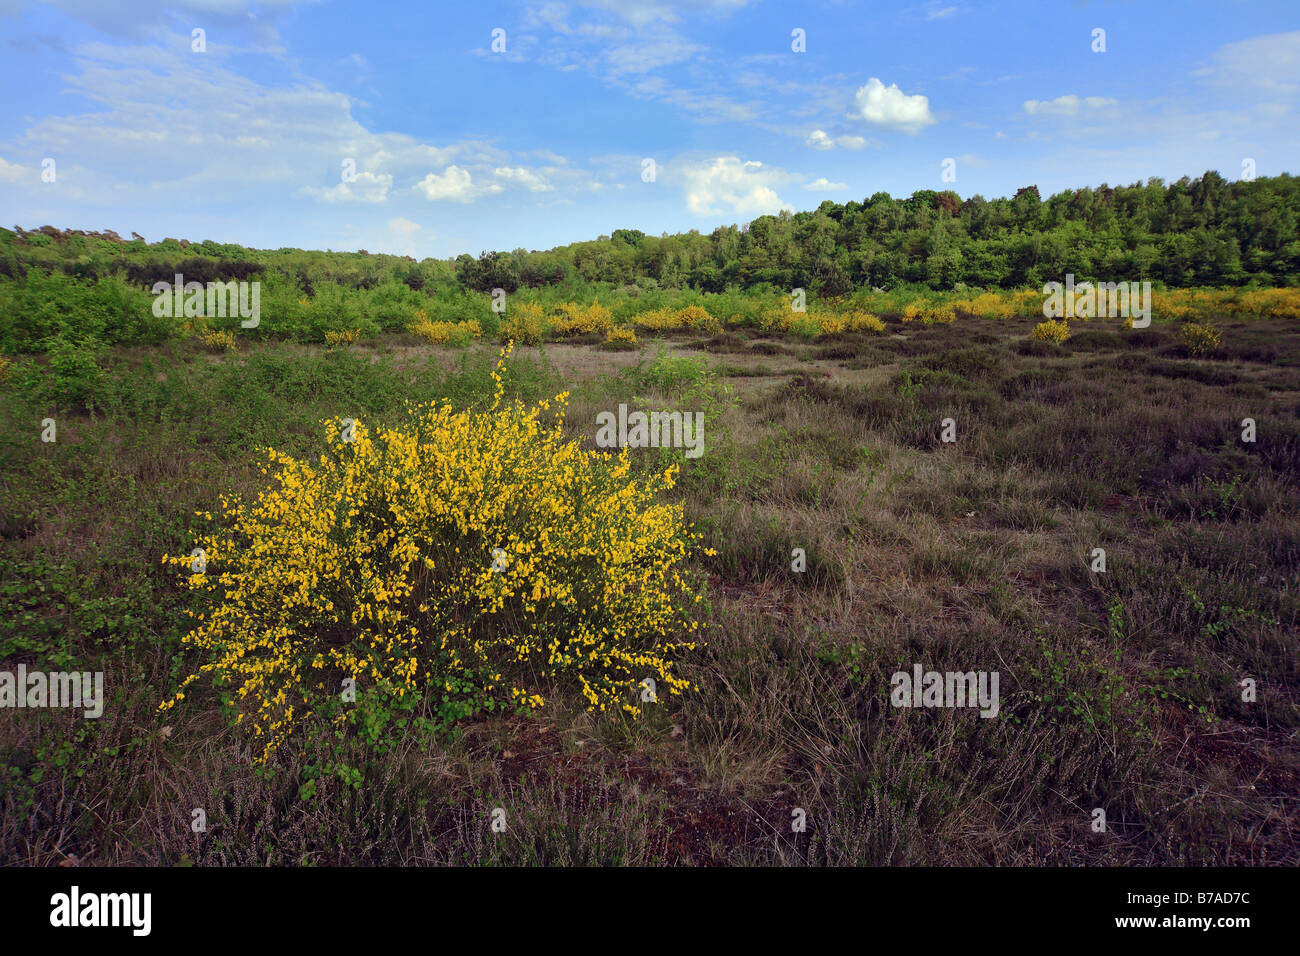 La retama negra (Cytisus scoparius) en heath paisaje, Wahner Heide, Colonia, Alemania, Europa Foto de stock